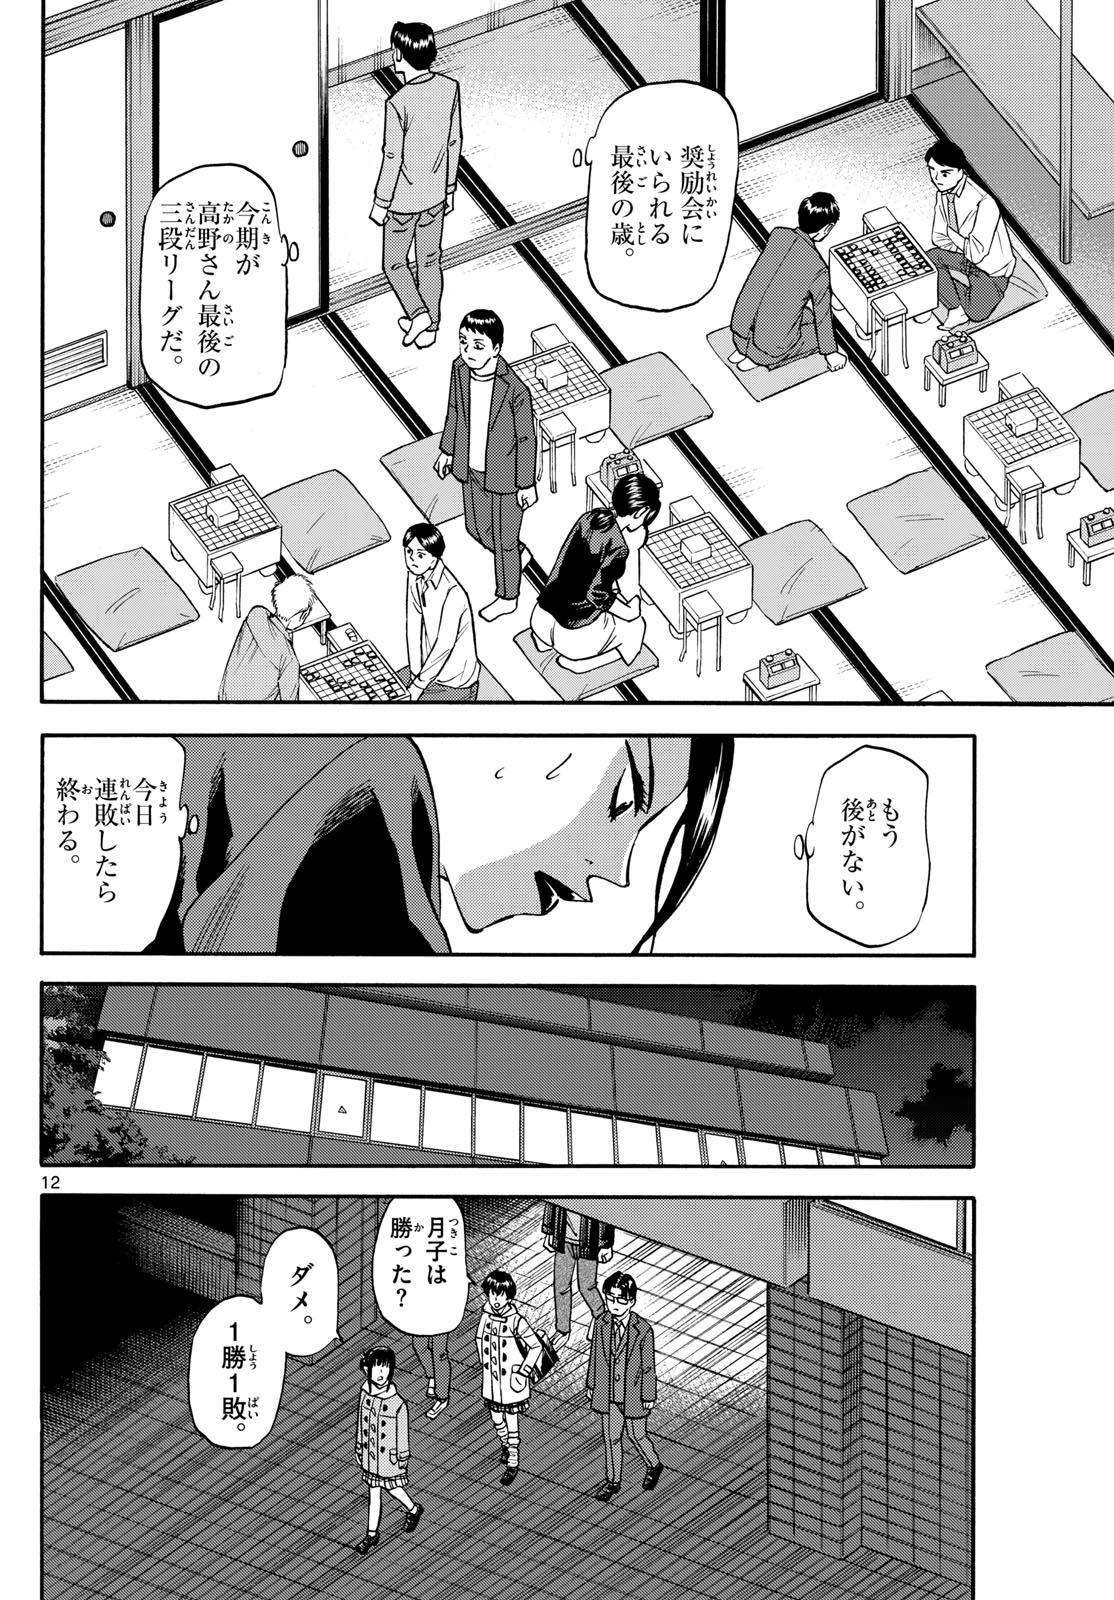 Tatsu to Ichigo - Chapter 172 - Page 12